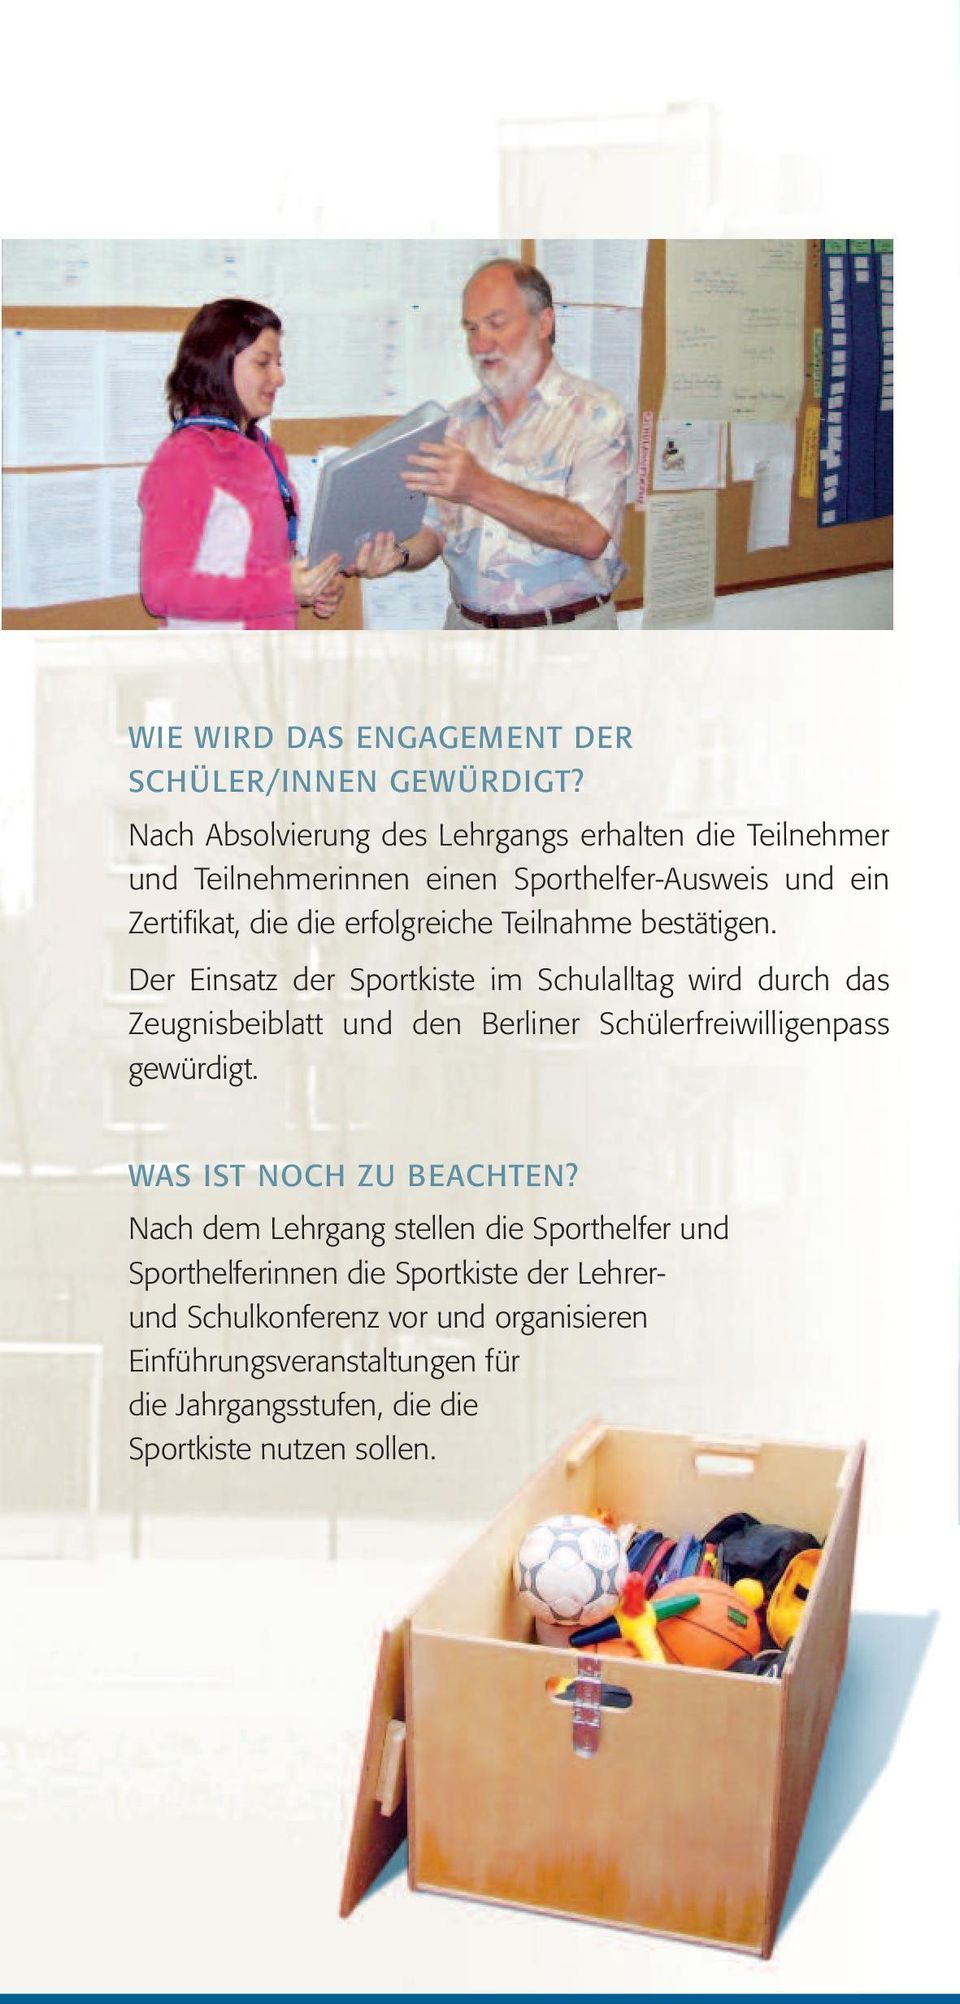 Teilnahme bestätigen. Der Einsatz der Sportkiste im Schulalltag wird durch das Zeugnisbeiblatt und den Berliner Schülerfreiwilligenpass gewürdigt.